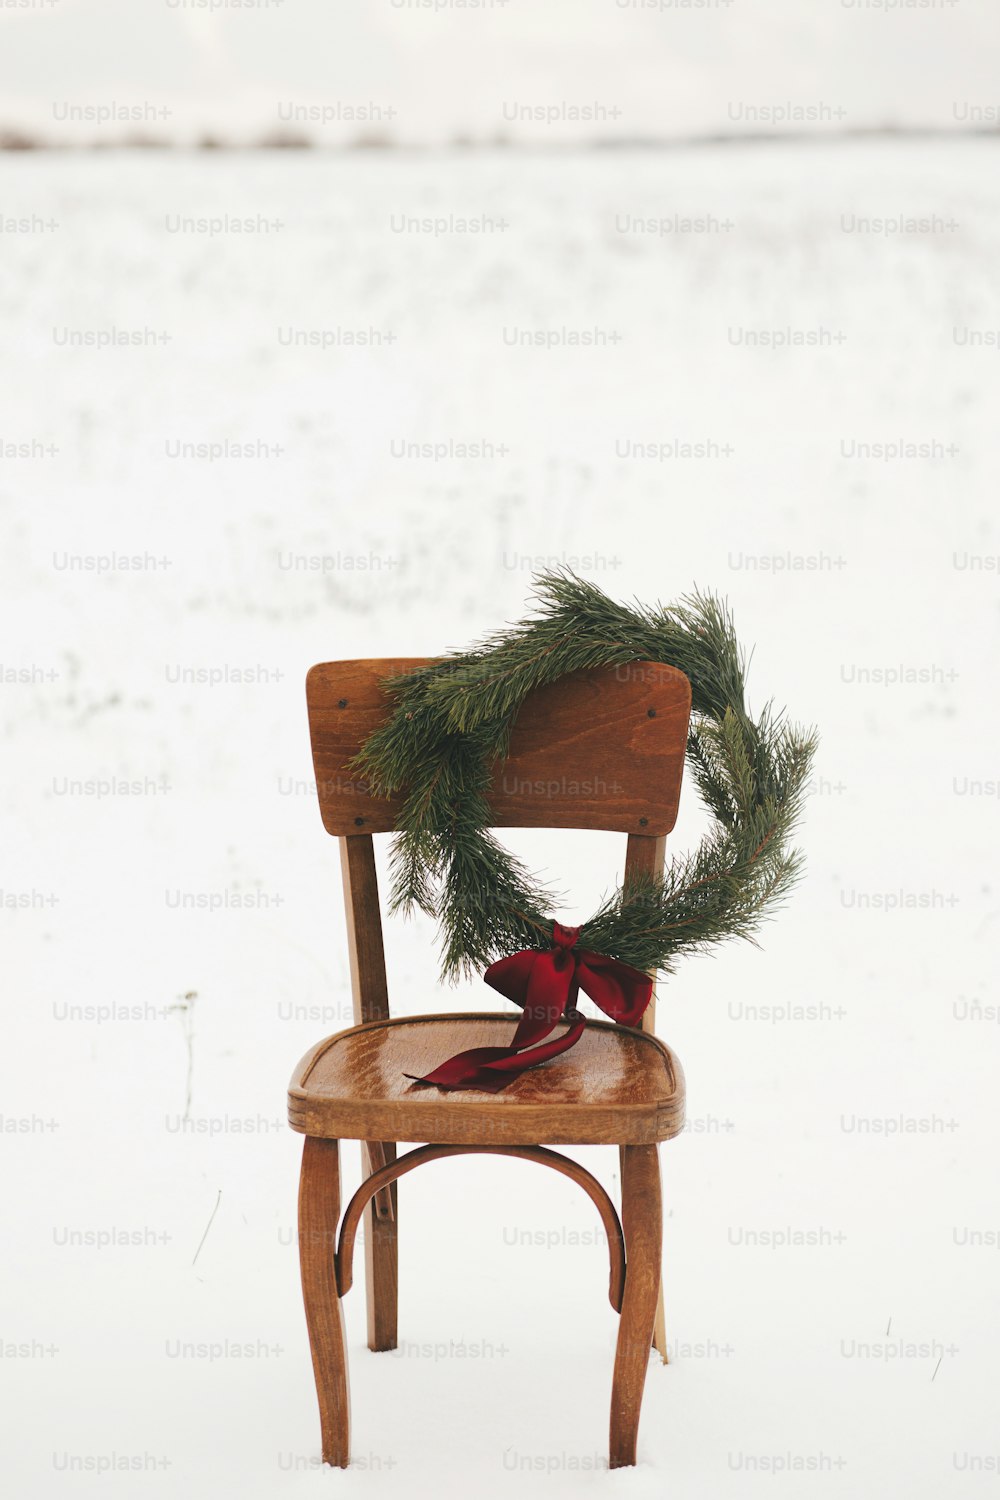 Frohe Weihnachten! Weihnachtskranz auf rustikalem Stuhl im verschneiten Winterfeld. Winterurlaub auf dem Land. Platz für Text. Stilvoller Weihnachtskranz mit Tannenzweigen und roter Schleife hängt am Holzstuhl